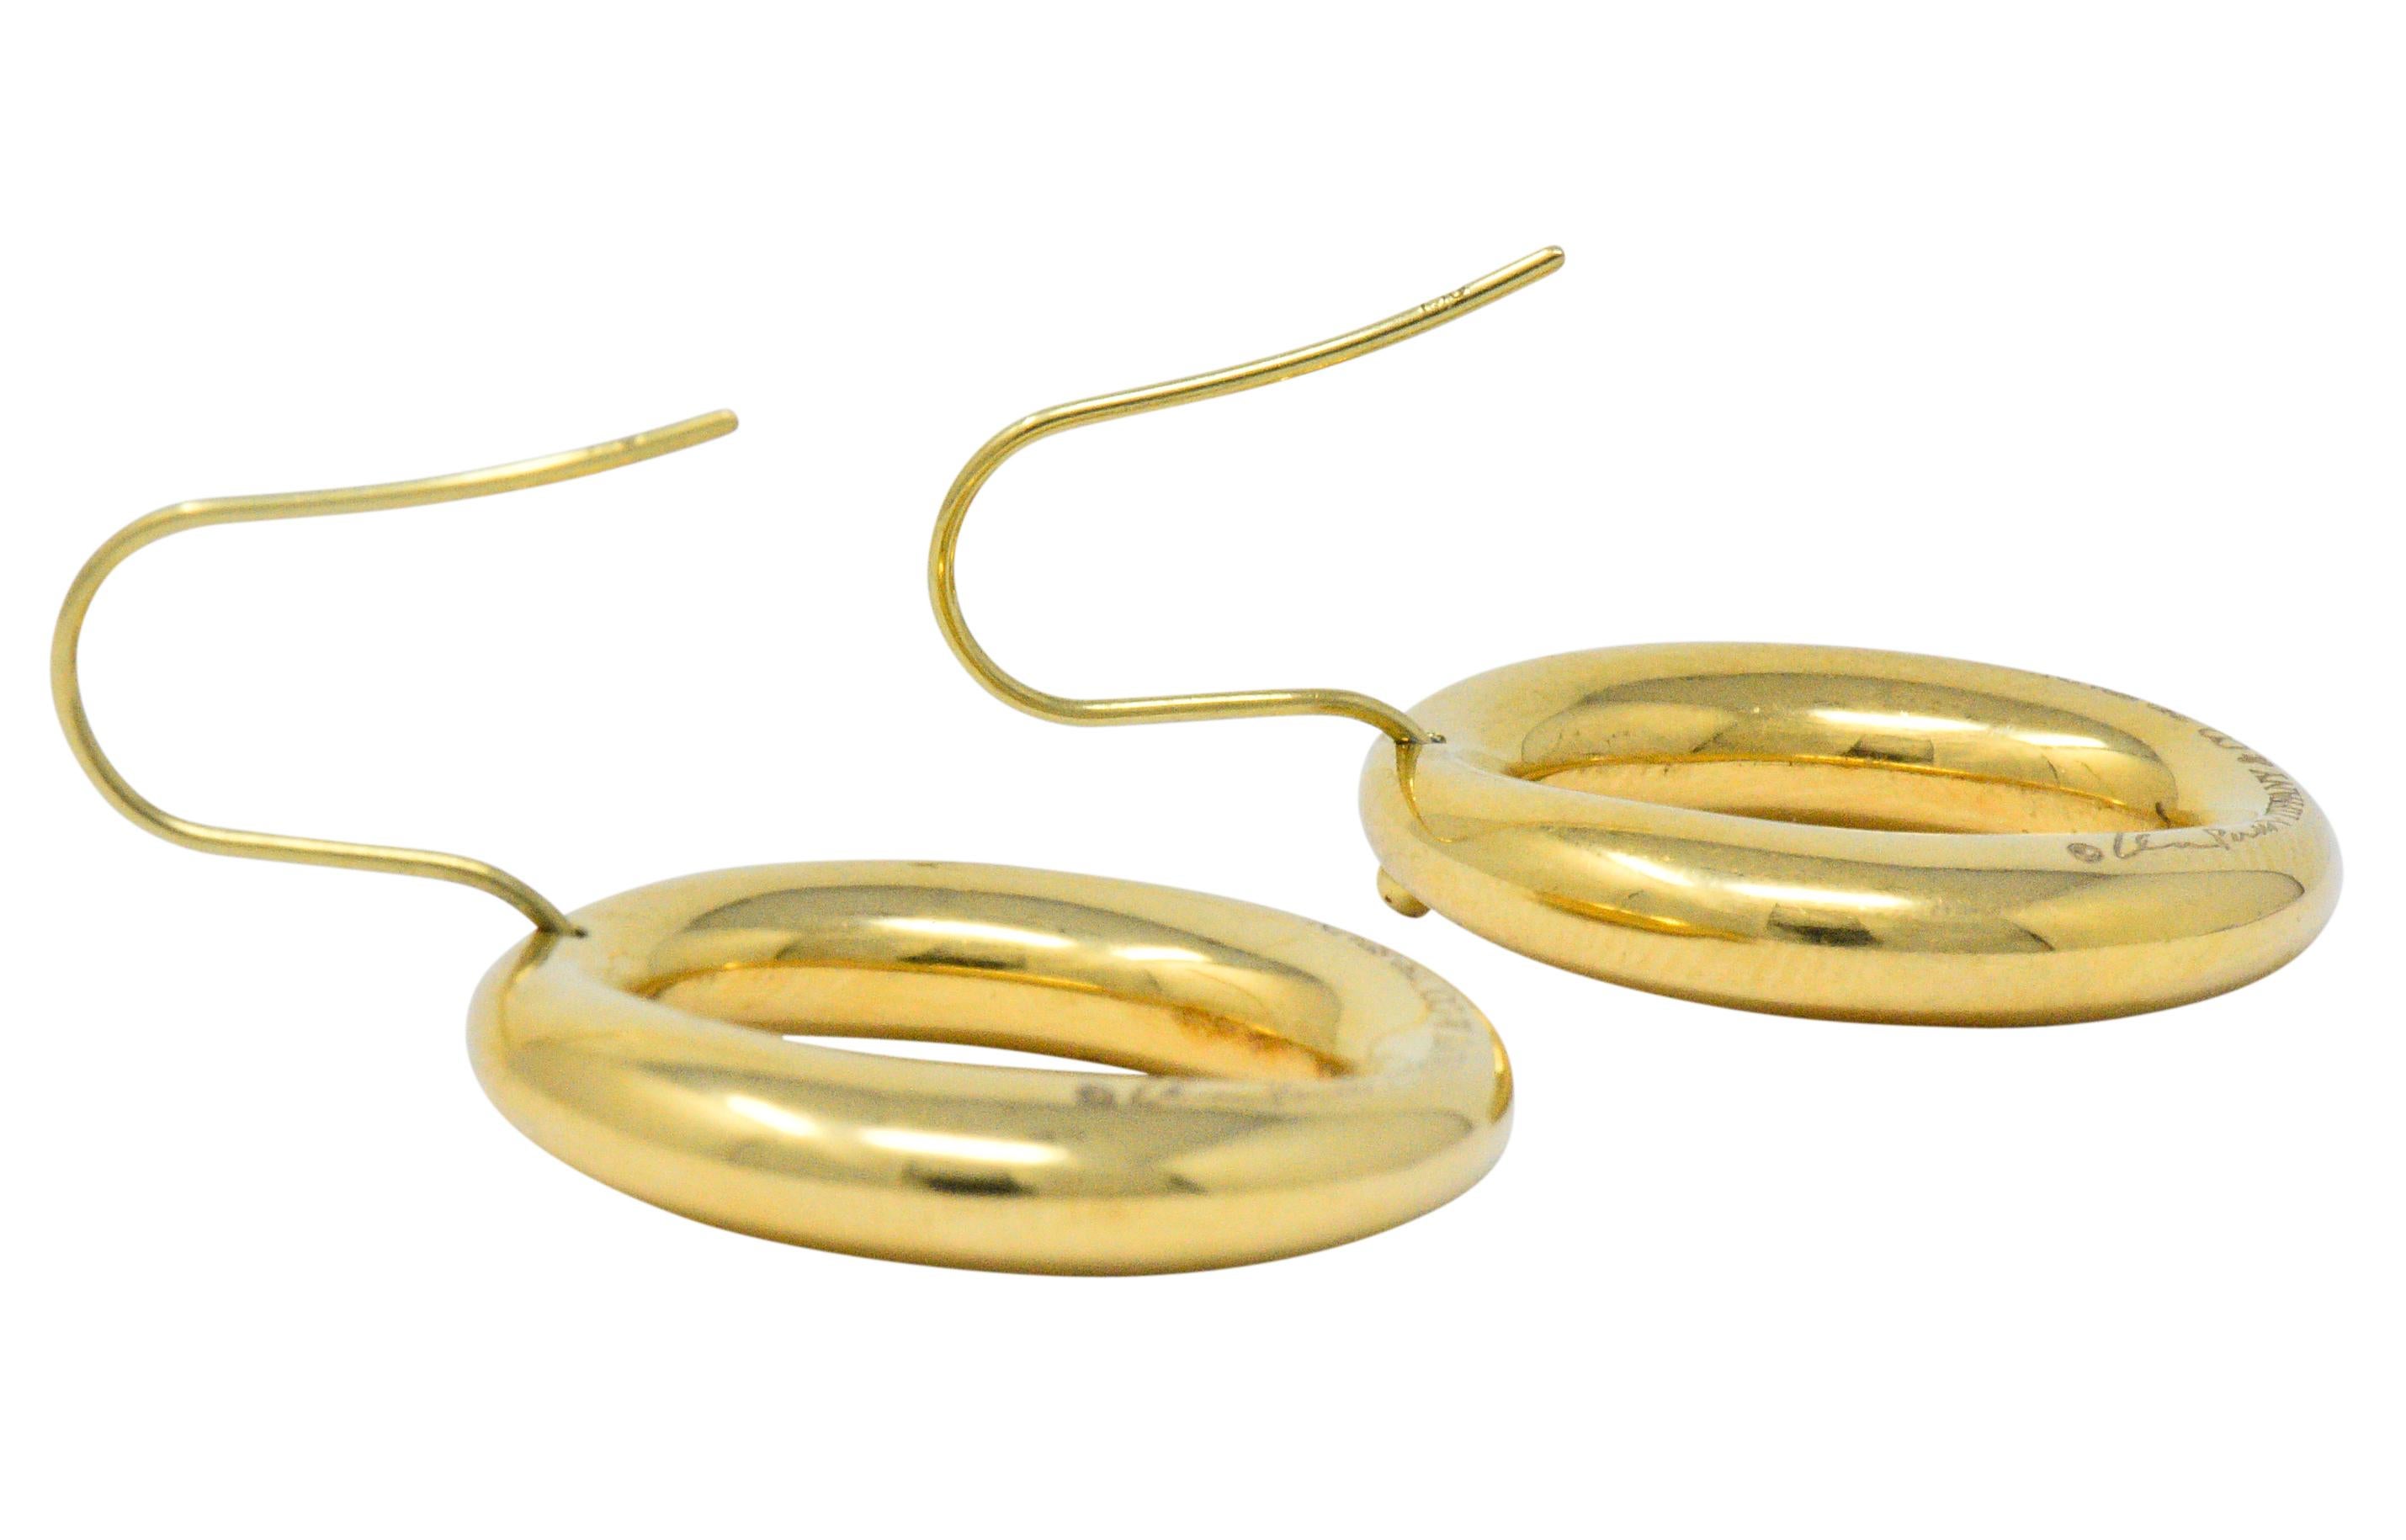 tiffany gold link earrings